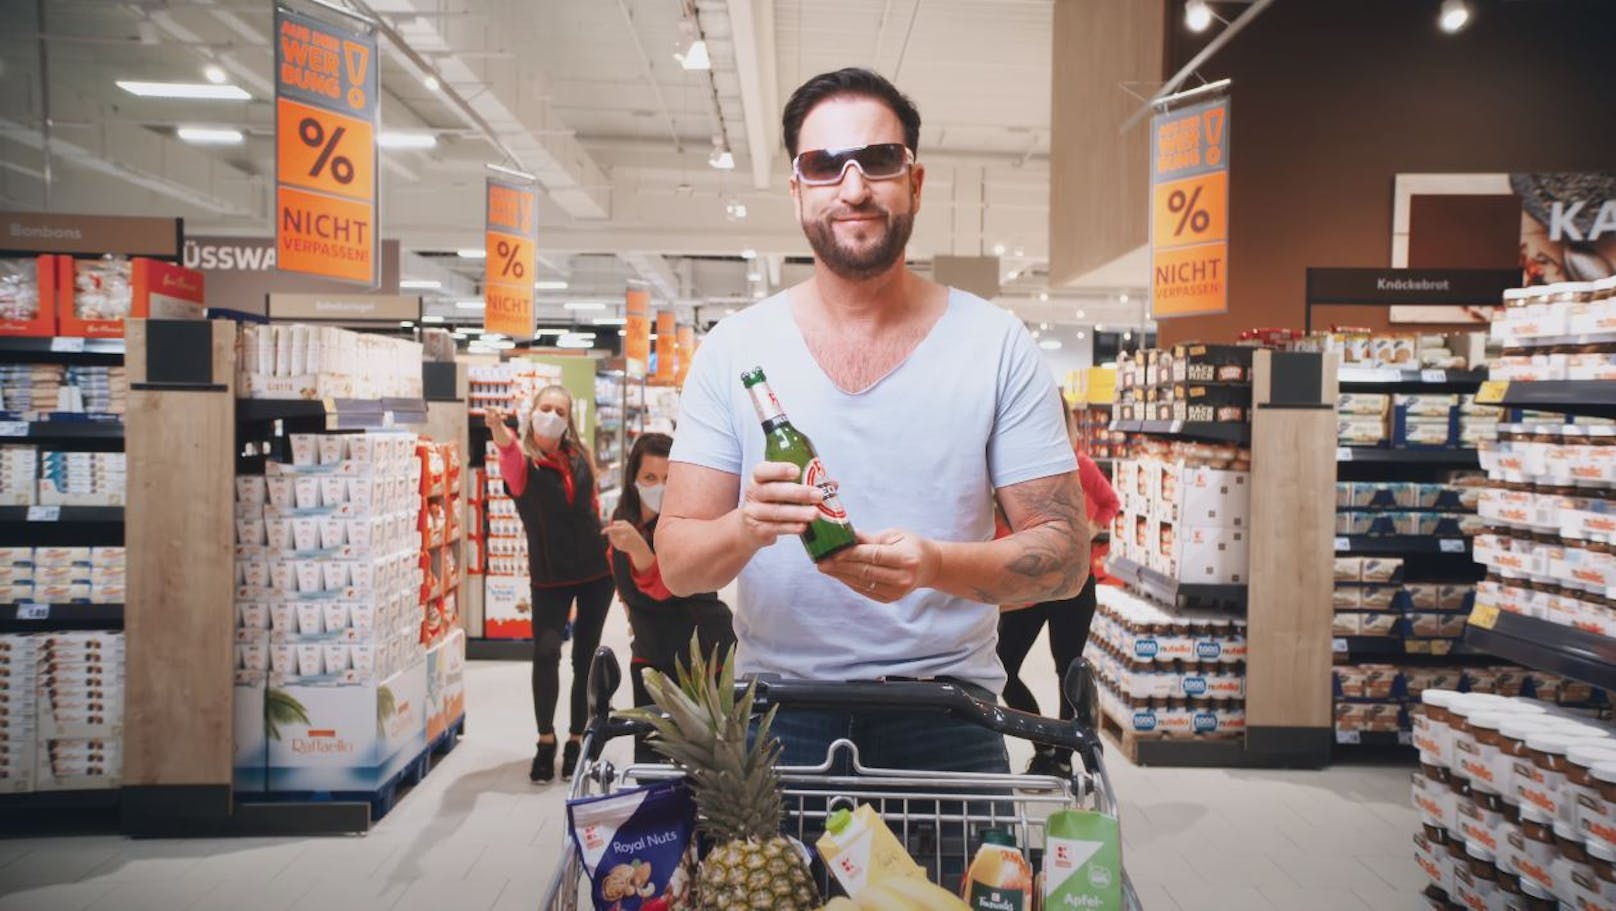 Der Werbespot für die Supermarkt-Kette "Kaufland" hat sich für <strong>Michael Wendler</strong> vollends ausgezahlt.&nbsp;